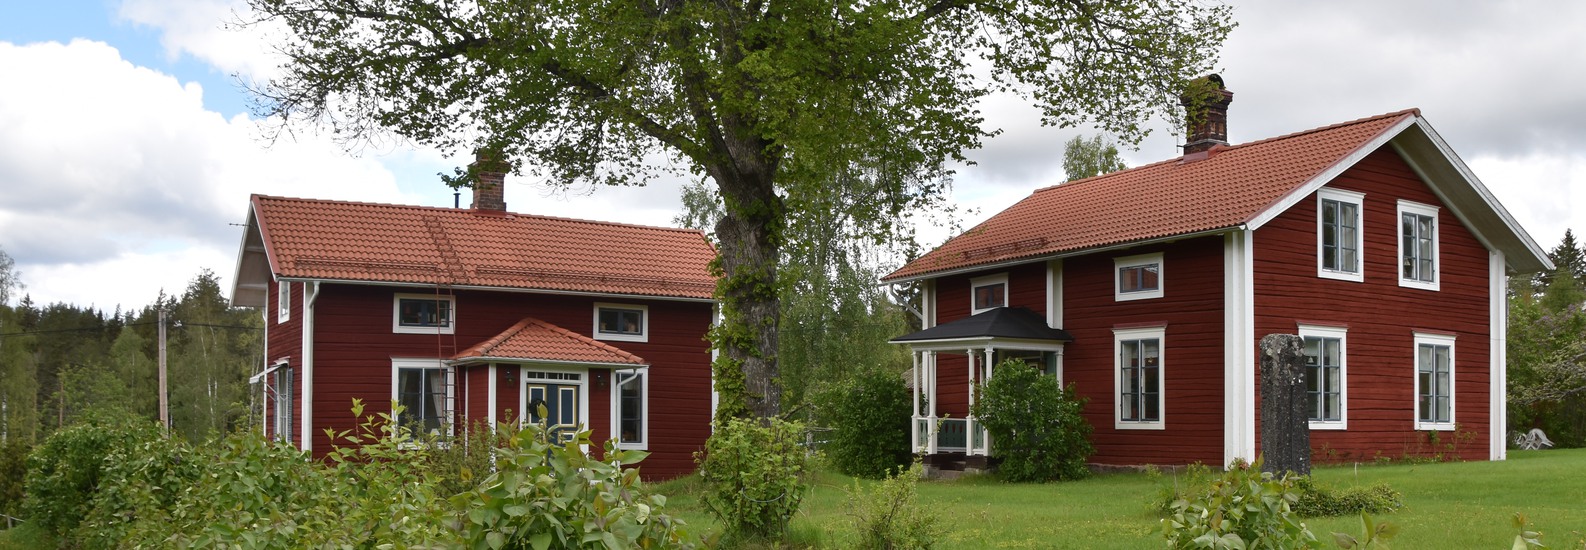 En gård med två faluröda hus med vita knutar.